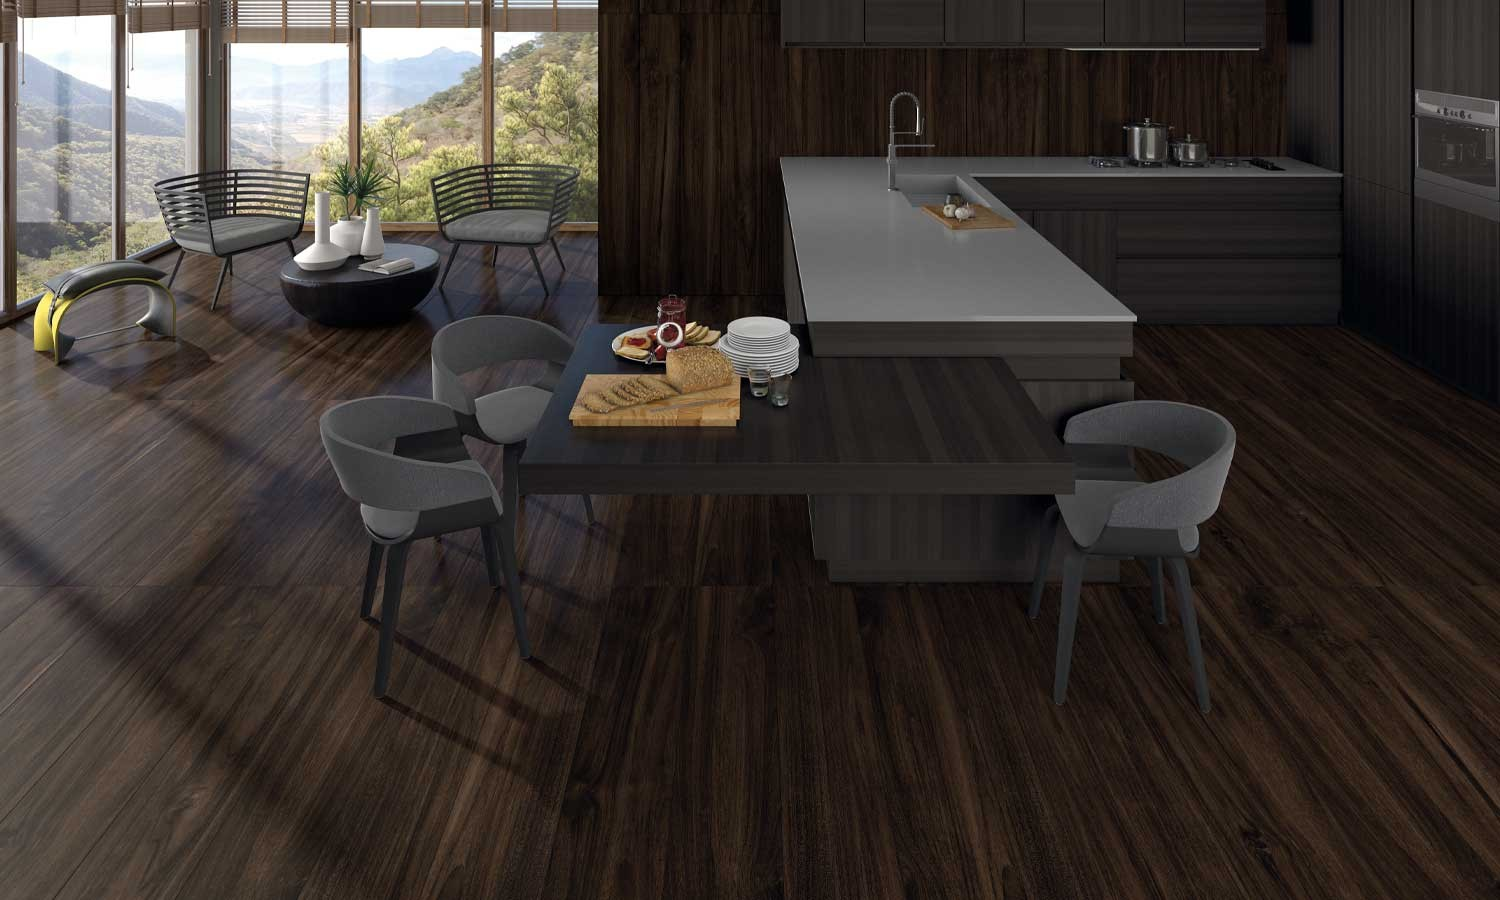 Une salle à manger moderne avec cuisine ouverte